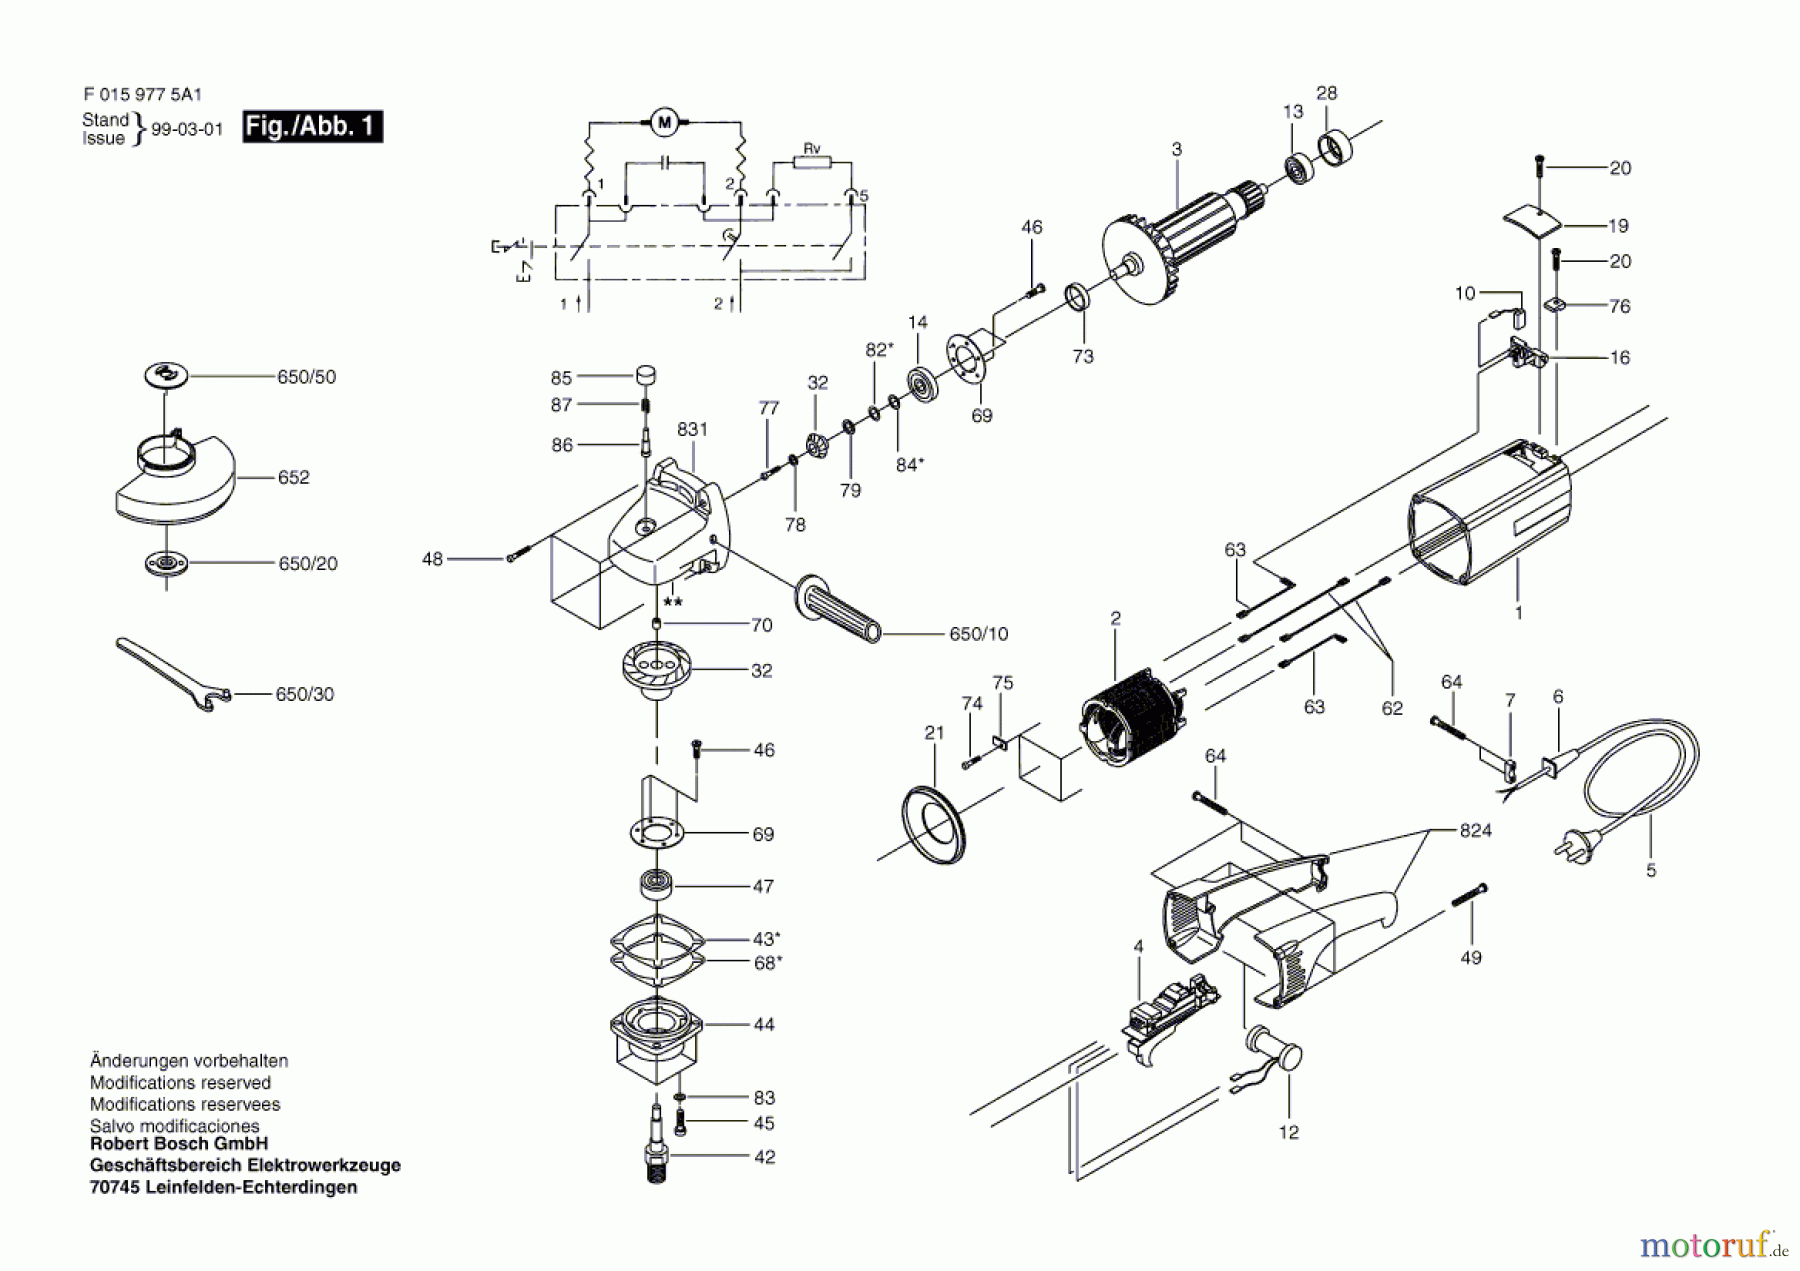  Bosch Werkzeug Winkelschleifer 9775 H1 Seite 1